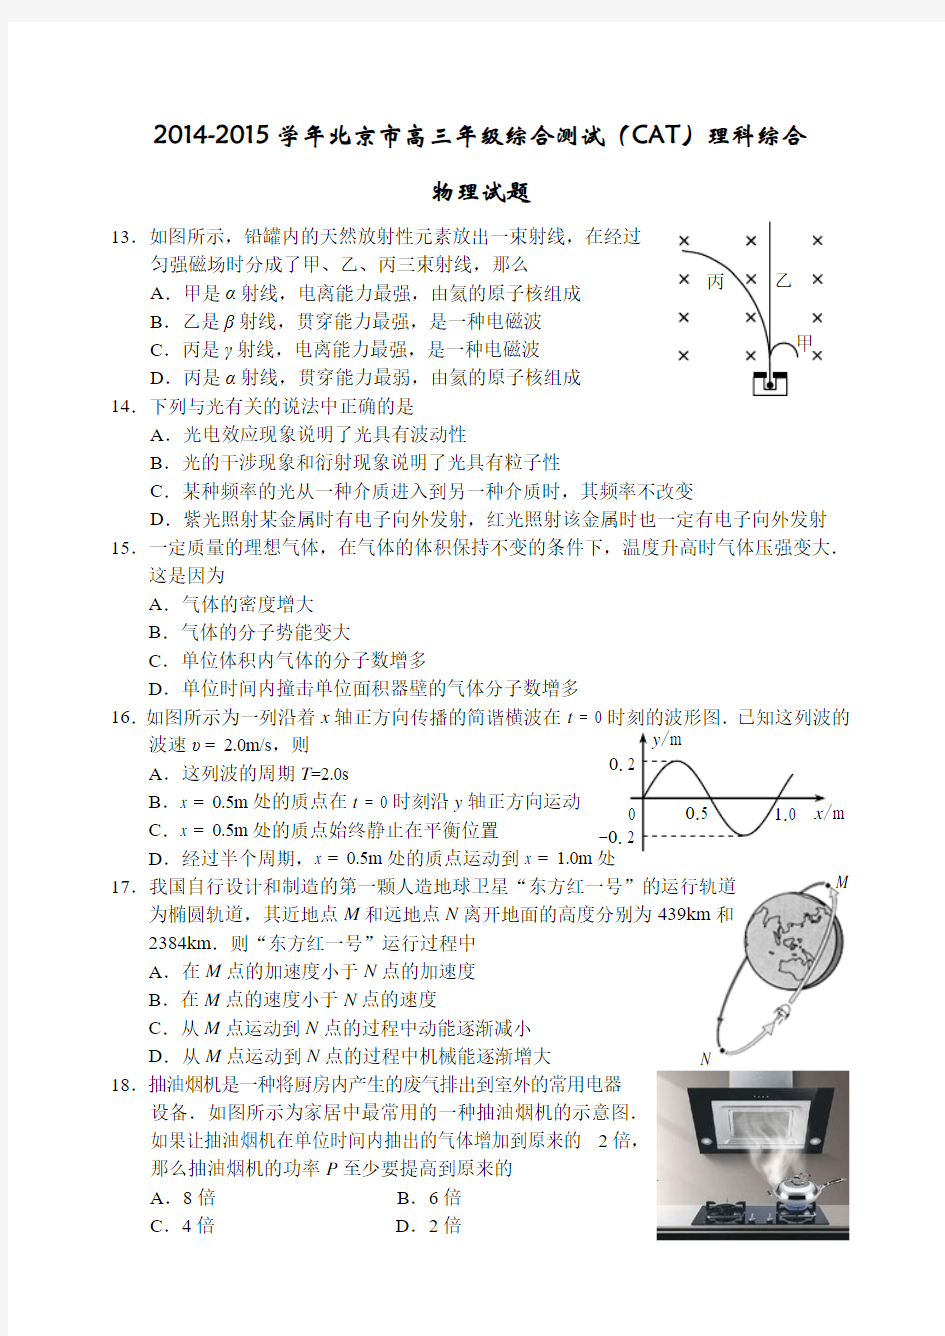 2014-2015学年北京市高三年级综合能力测试(CAT考试)理综物理及答案